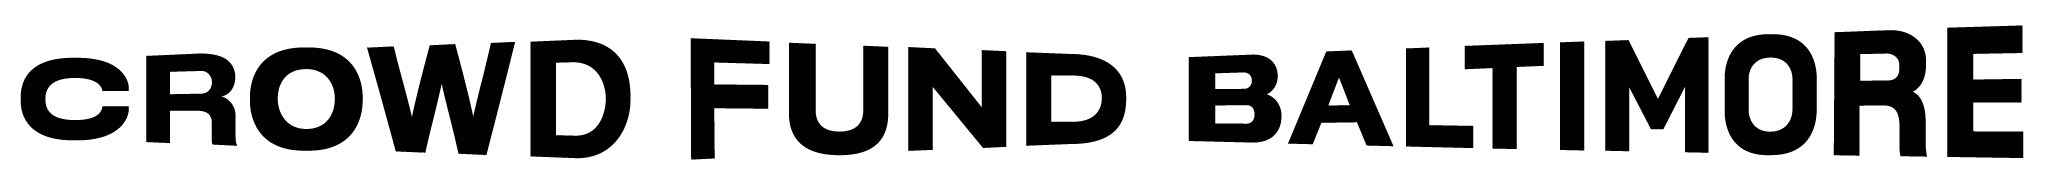 Crowd Fund Baltimore Logo